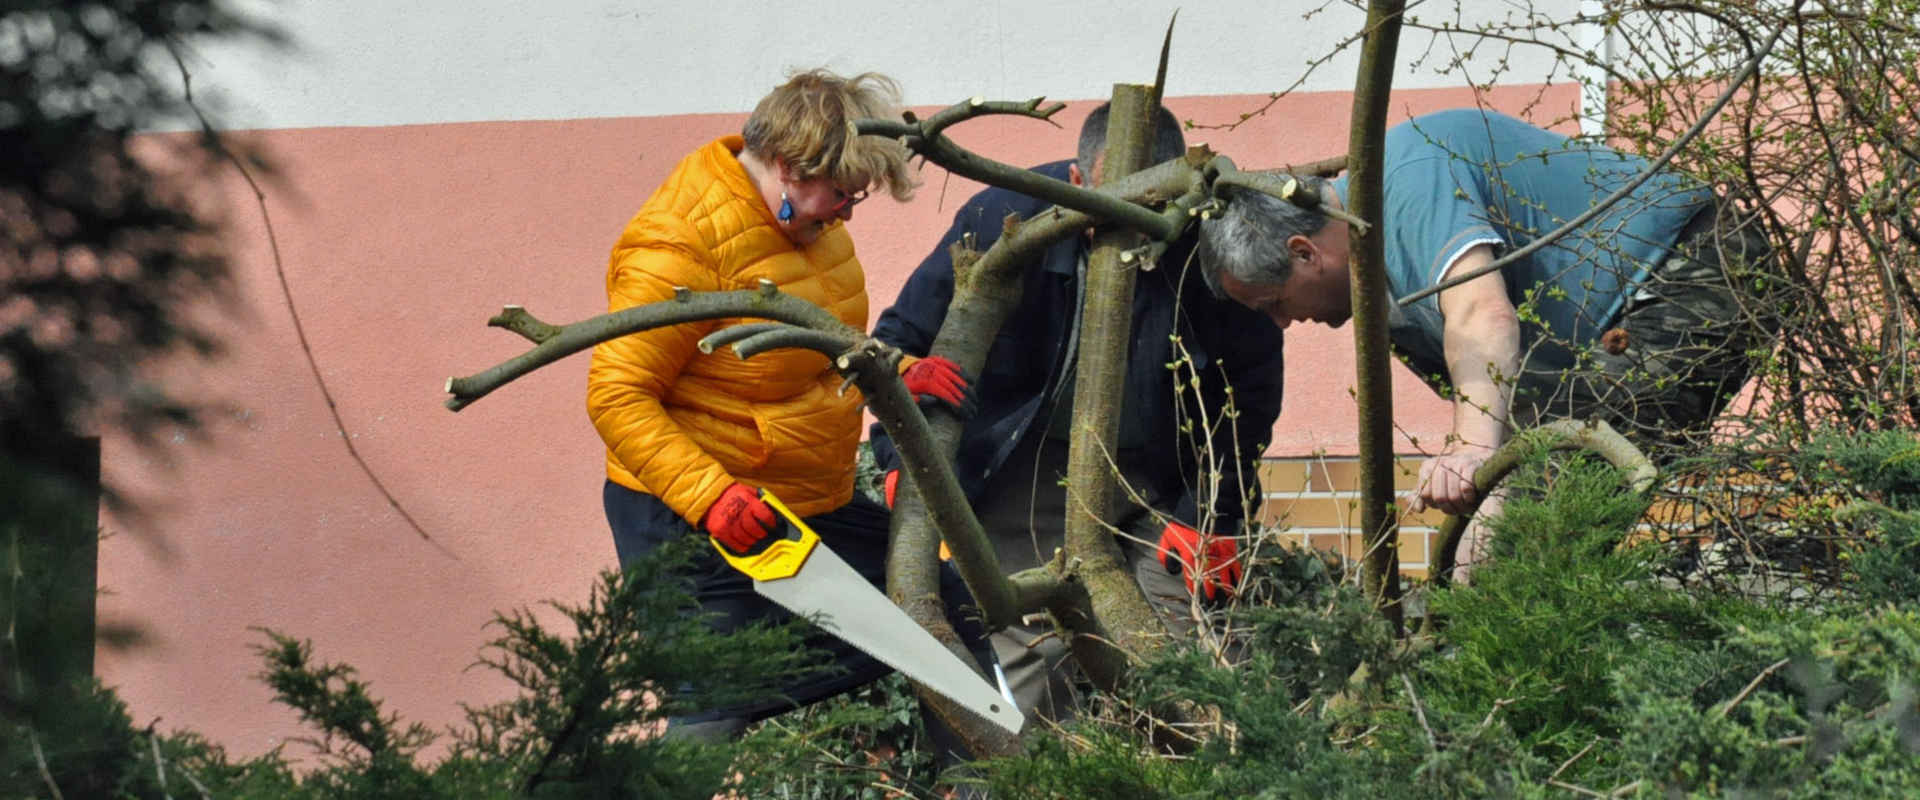 Trzy osoby sprzątają w ogrodzie